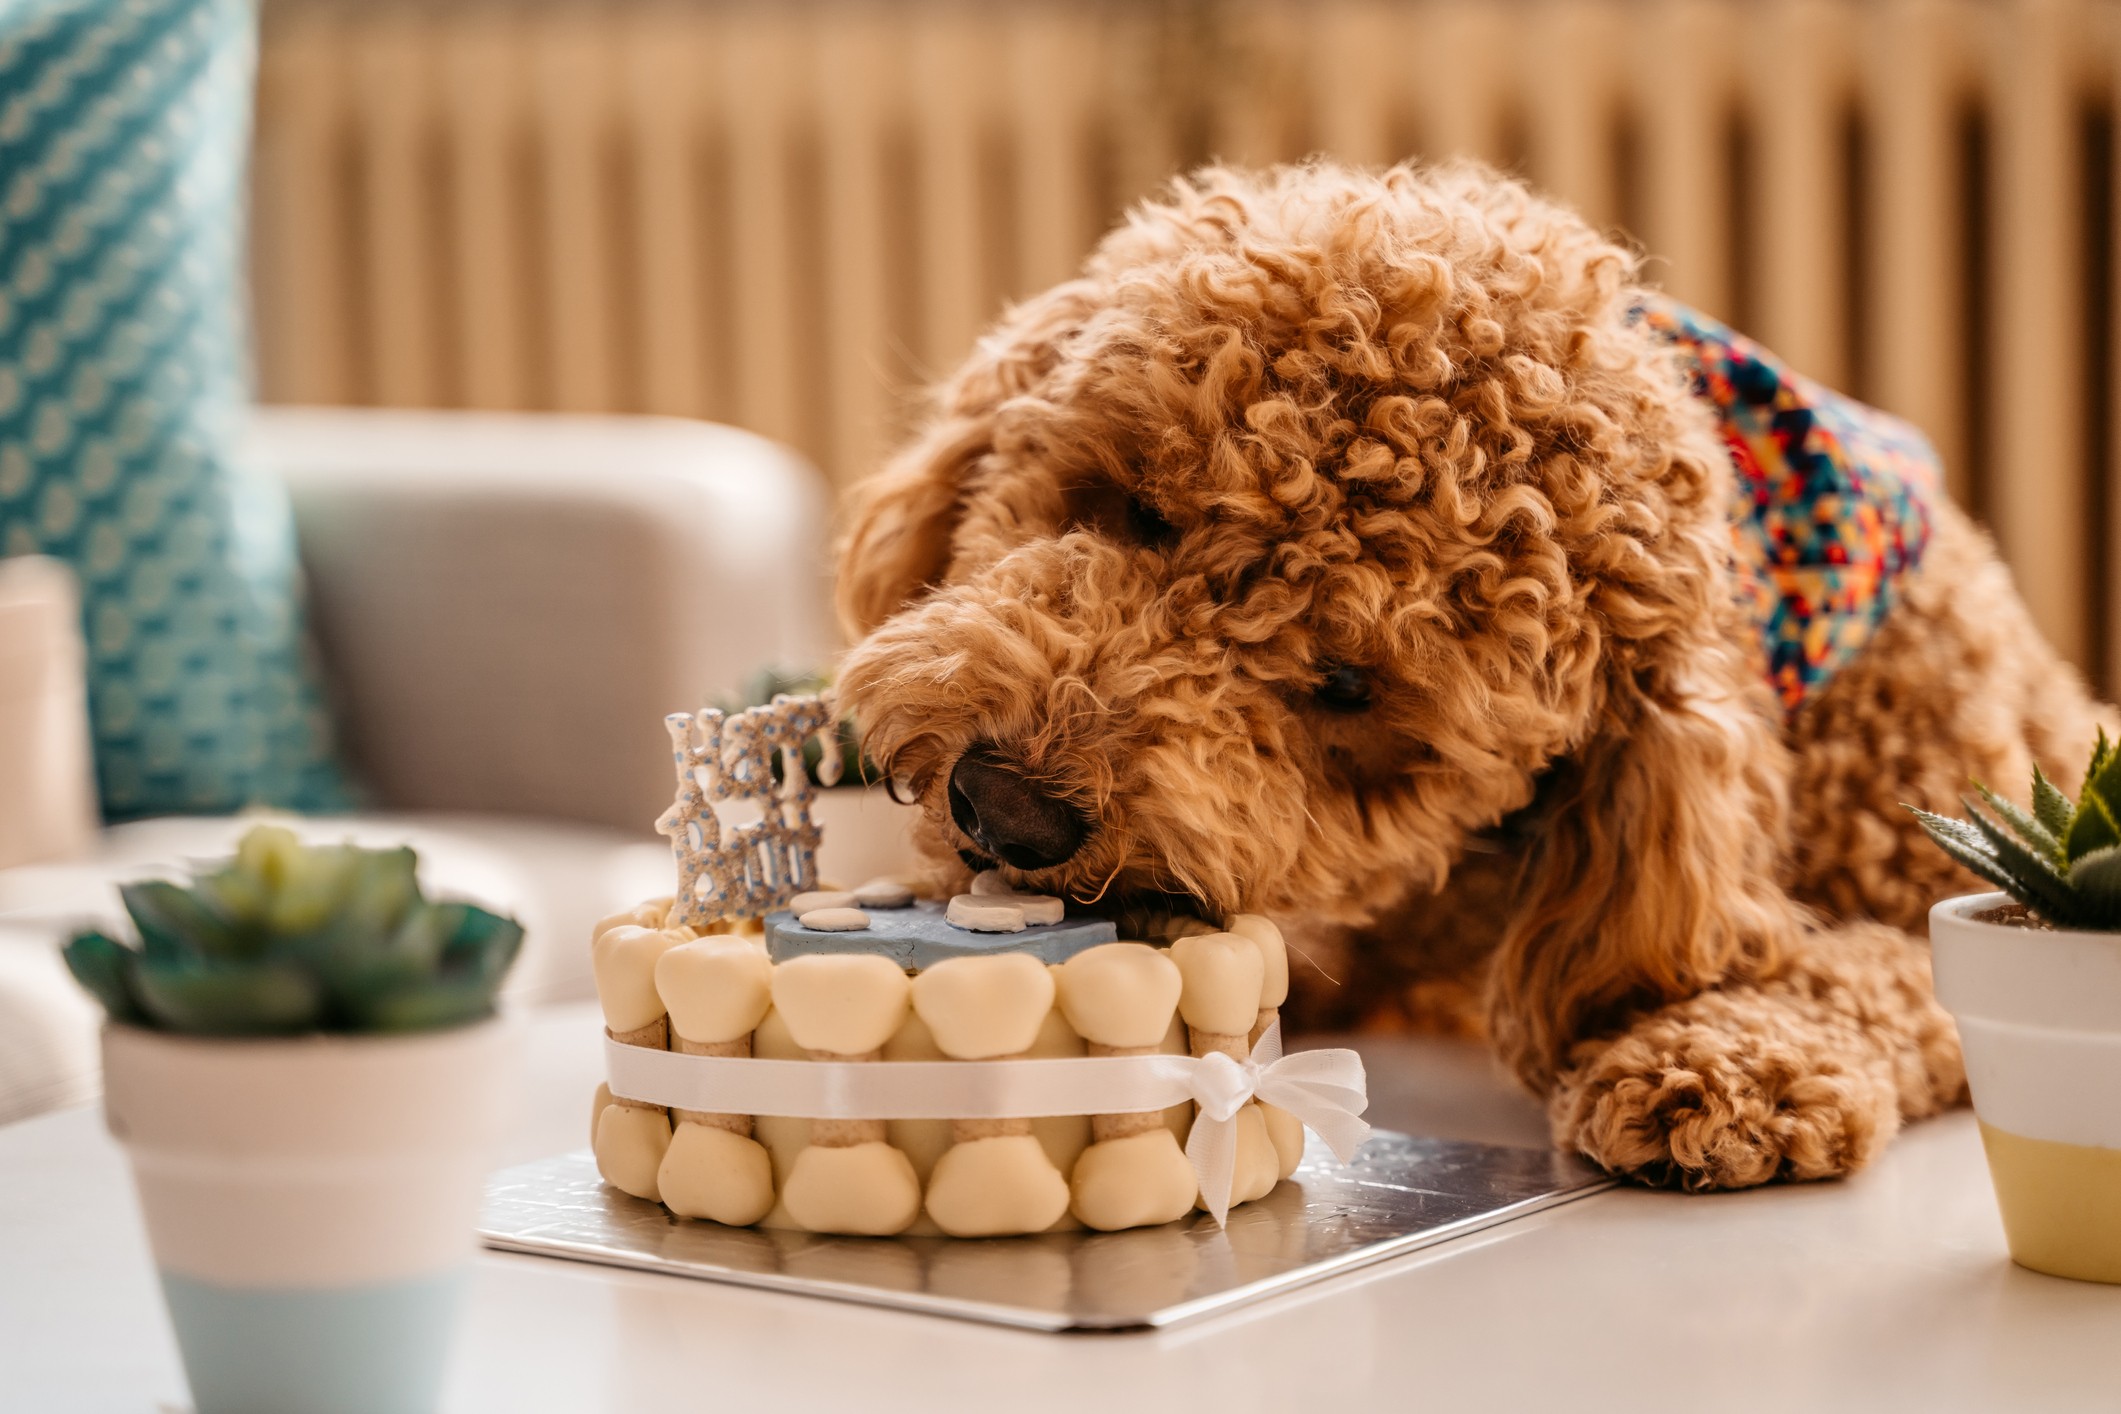 Como fazer um bolo saudável e delicioso para cães e gatos?